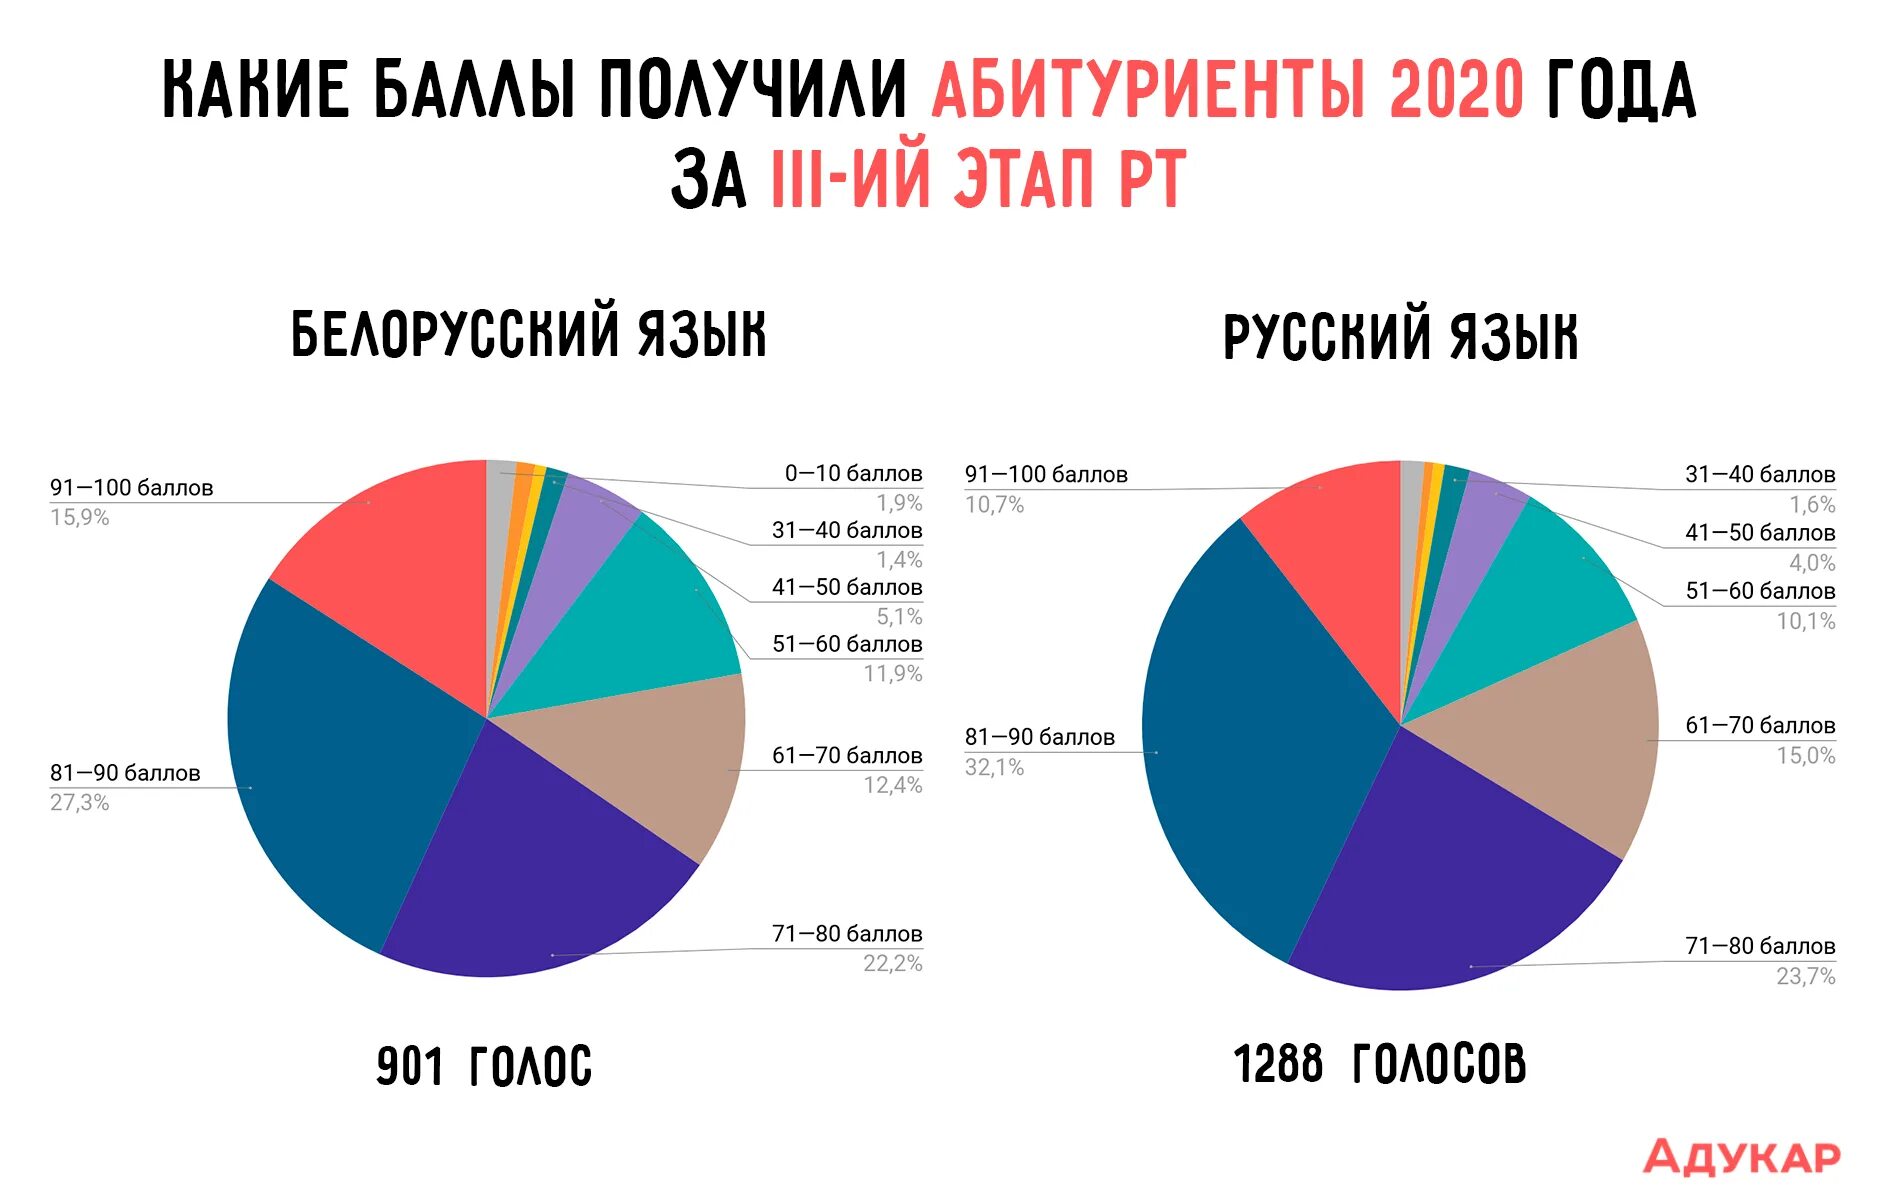 Сколько человек говорит на белорусском языке в Белоруссии. 3 этап рт 2020